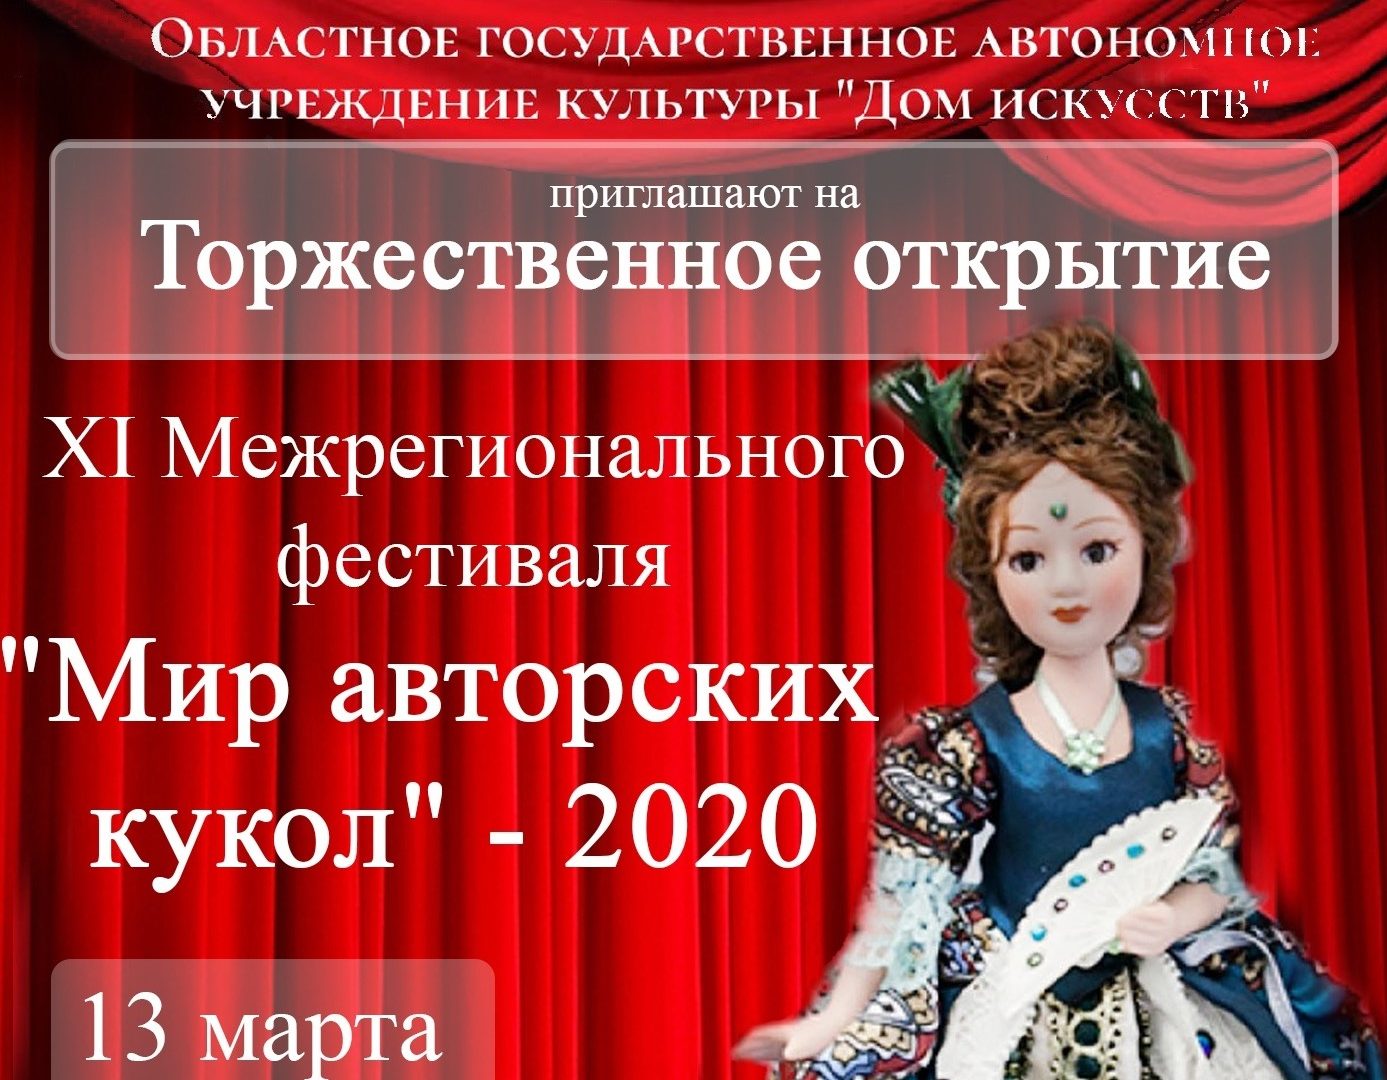 Открытие XI Межрегионального фестиваля "Мир авторских кукол" - 2020